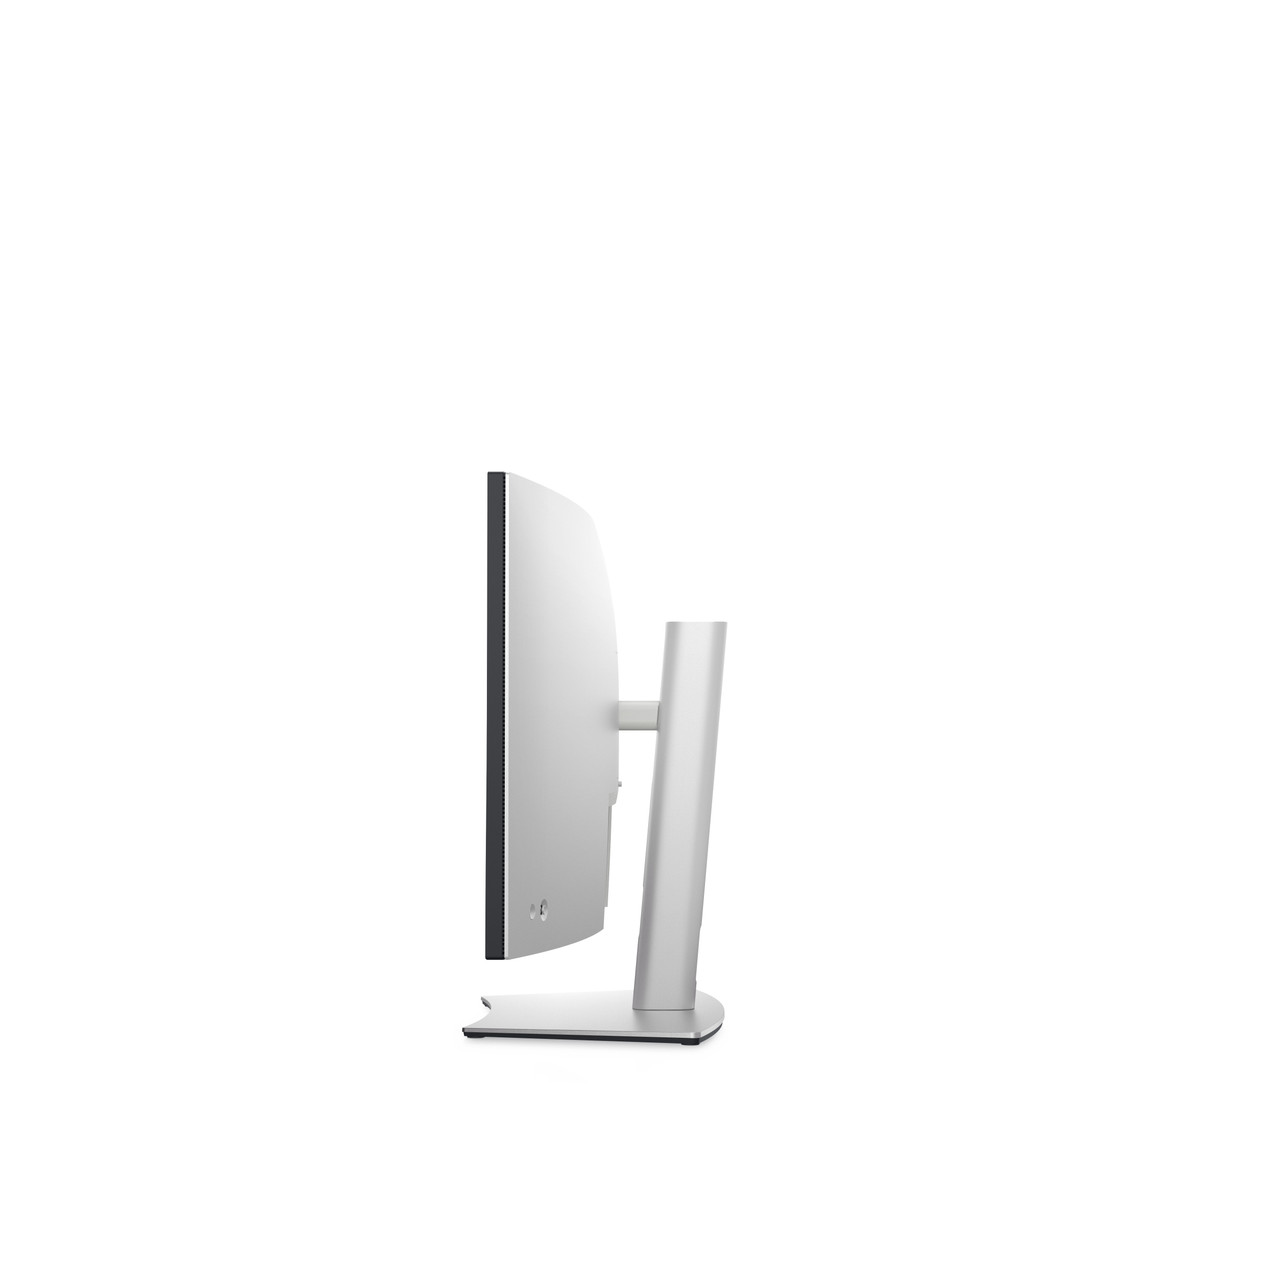 DELL UltraSharp U3824DW LED display 96.5 cm (38") 3840 x 1600 pixels Wide Quad HD+ LCD Black, Silver